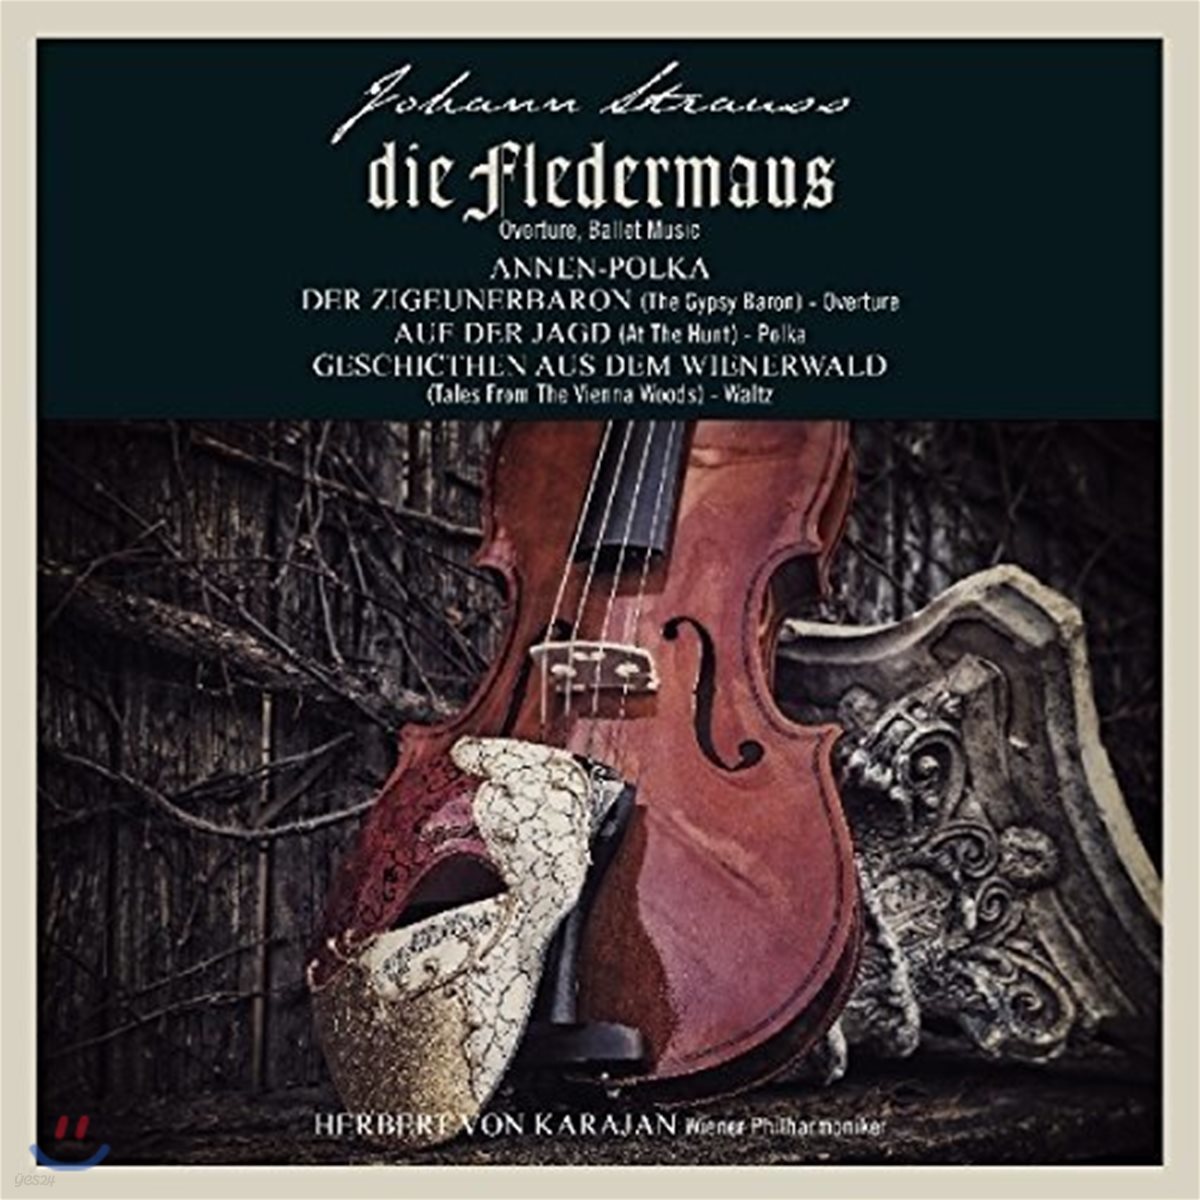 Herbert von Karajan 요한 스트라우스 2세: 서곡과 발레 음악 - 박쥐, 집시 남작, 빈 숲 속의 이야기 (Johann Strauss II: Die Fledermaus, Der Zigeunerbaron, Geschichten Aus Dem Wienerwald) [LP]